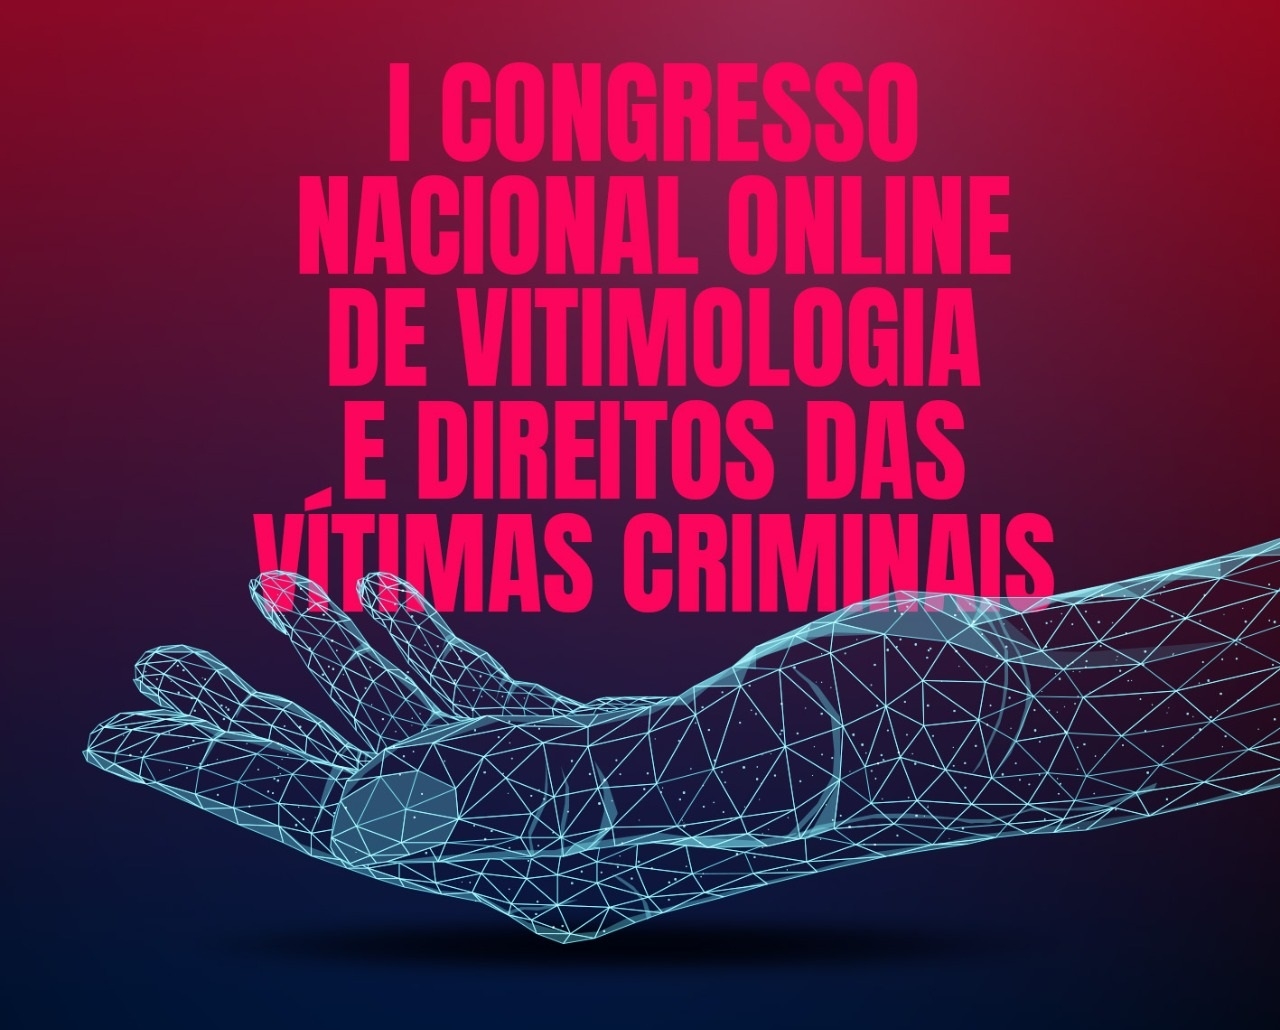 Inscrições abertas para o I Congresso Nacional ONLINE de Vitimologia e Direitos das Vítimas Criminais